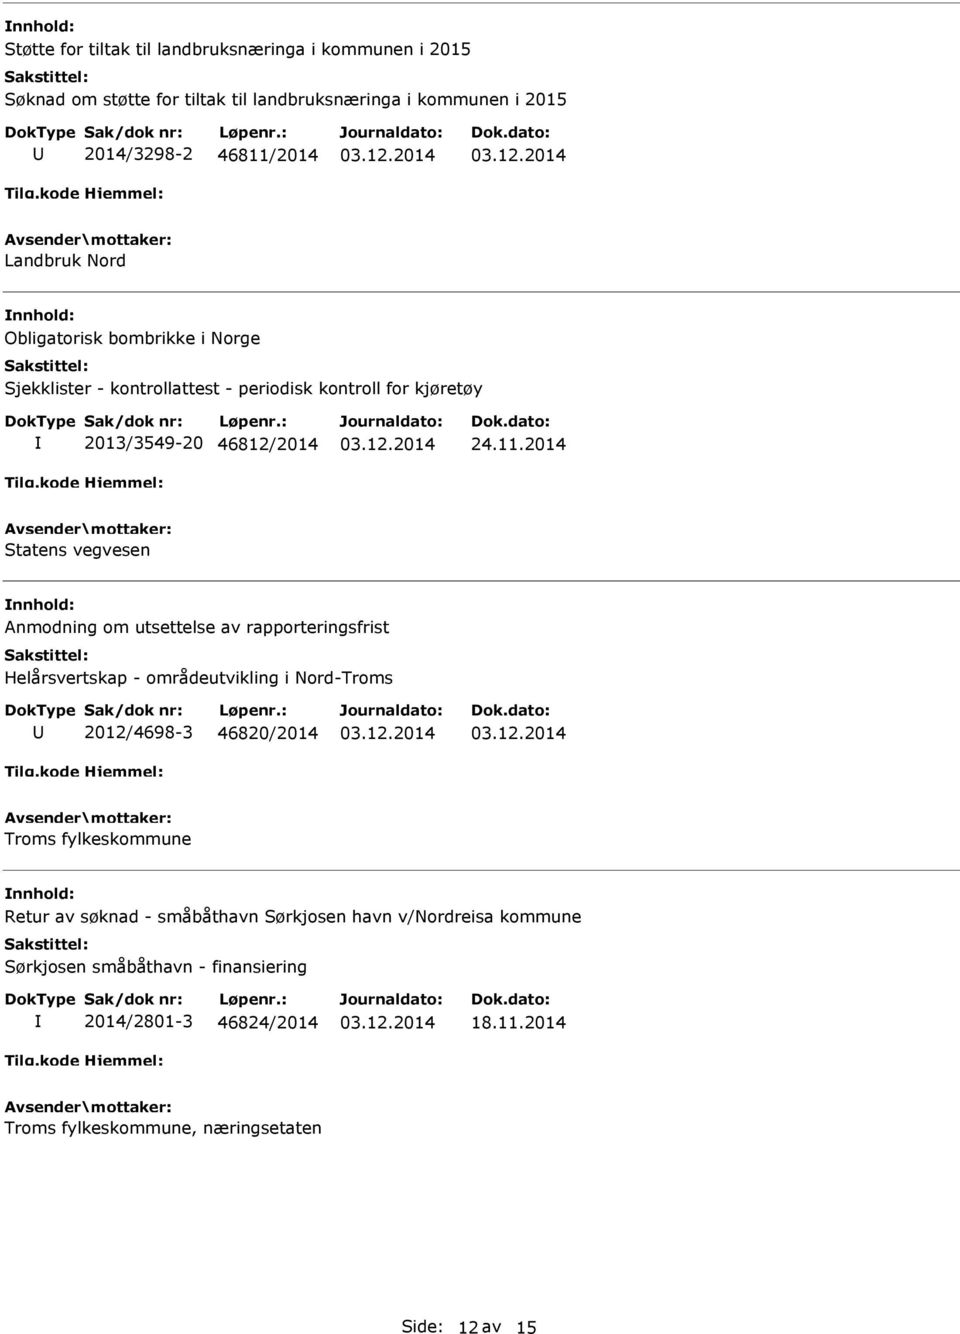 2014 Statens vegvesen Anmodning om utsettelse av rapporteringsfrist Helårsvertskap - områdeutvikling i Nord-Troms 2012/4698-3 46820/2014 Troms fylkeskommune